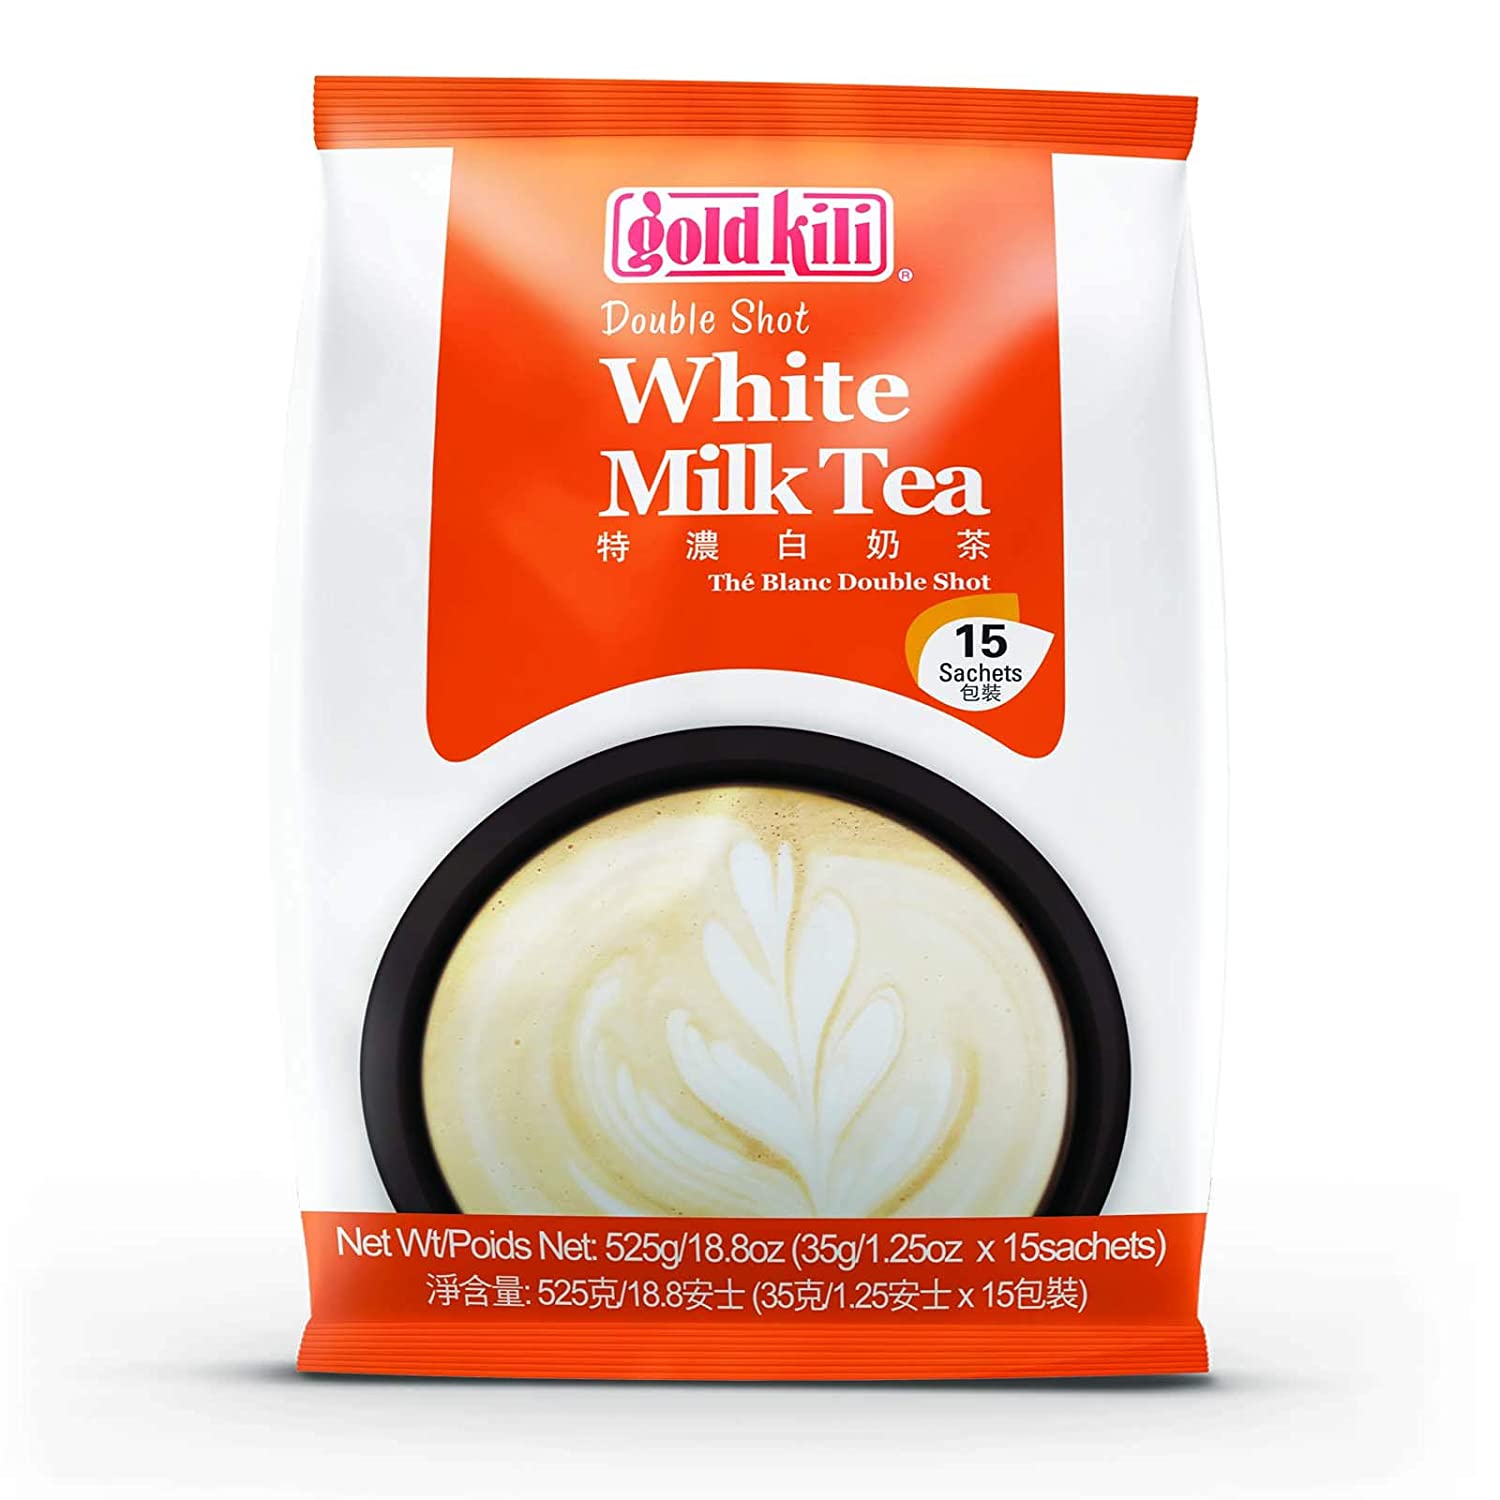 Gold Kili instant Double Shot White Milk Tea, 15 -Count